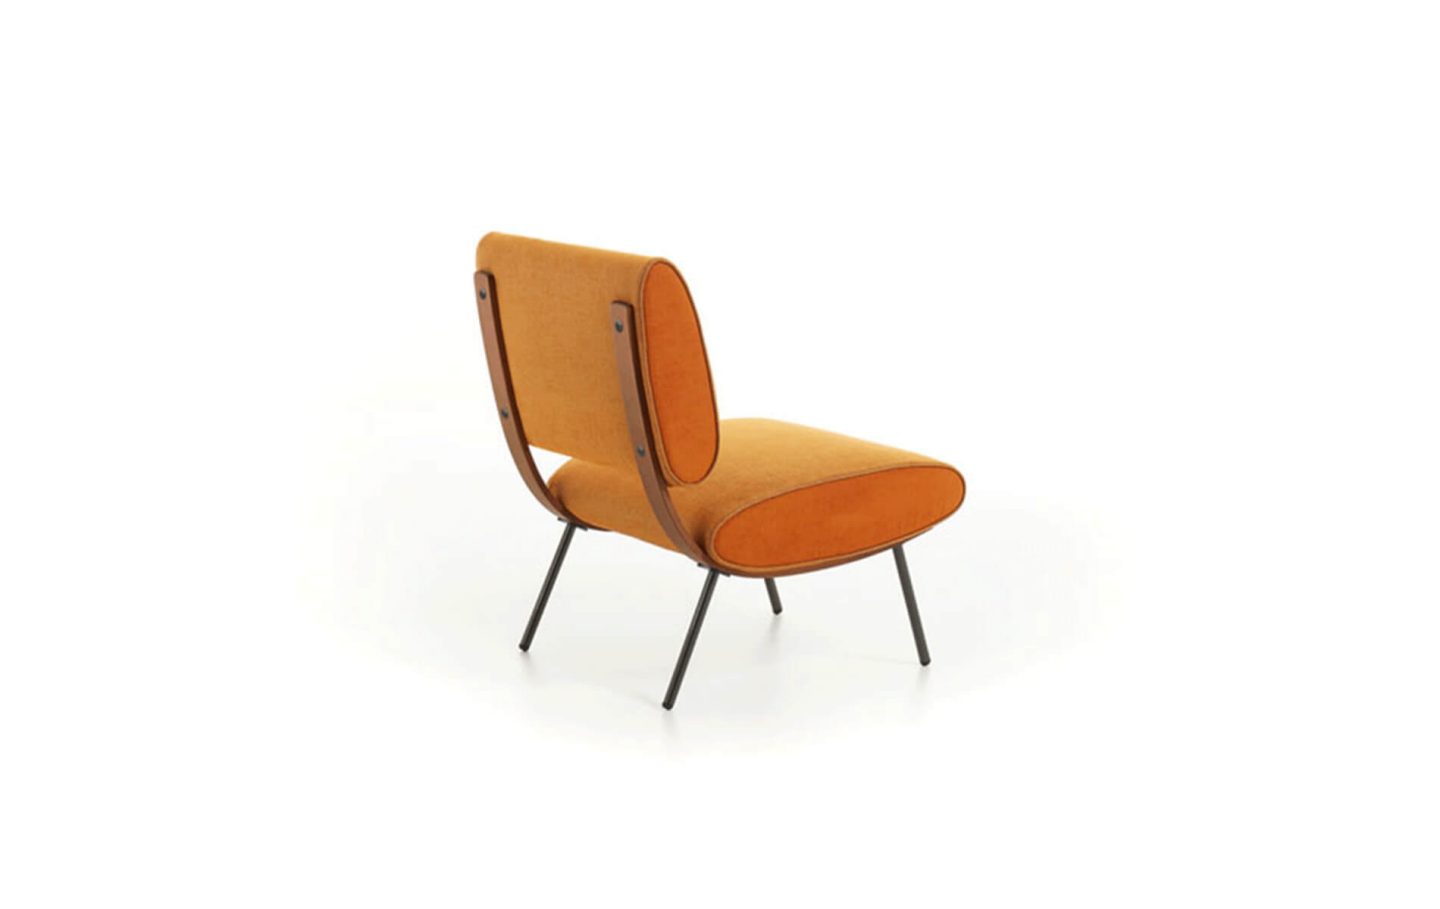 Der Sessel «Round D.154.5» wurde von Gio Ponti 1954 entwickelt. Nun legt Molteni den Sessel in einer Überarbeitung wieder auf. Bild: Molteni